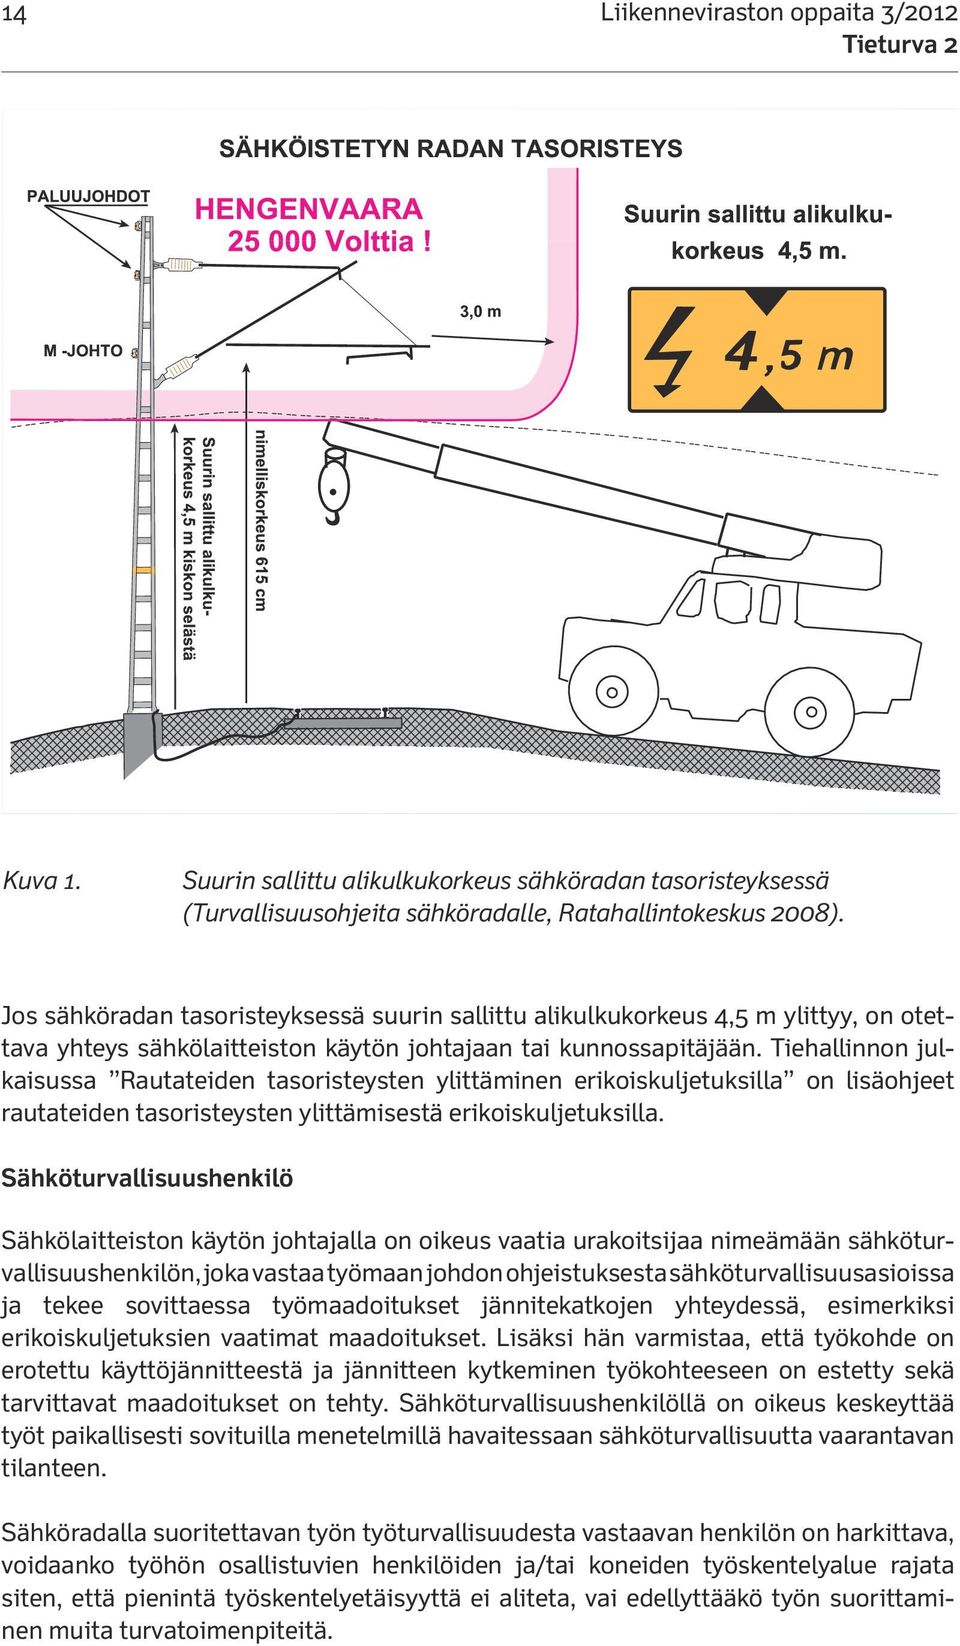 Suurin sallittu alikulkukorkeus sähköradan tasoristeyksessä (Turvallisuusohjeita sähköradalle, Ratahallintokeskus 2008).